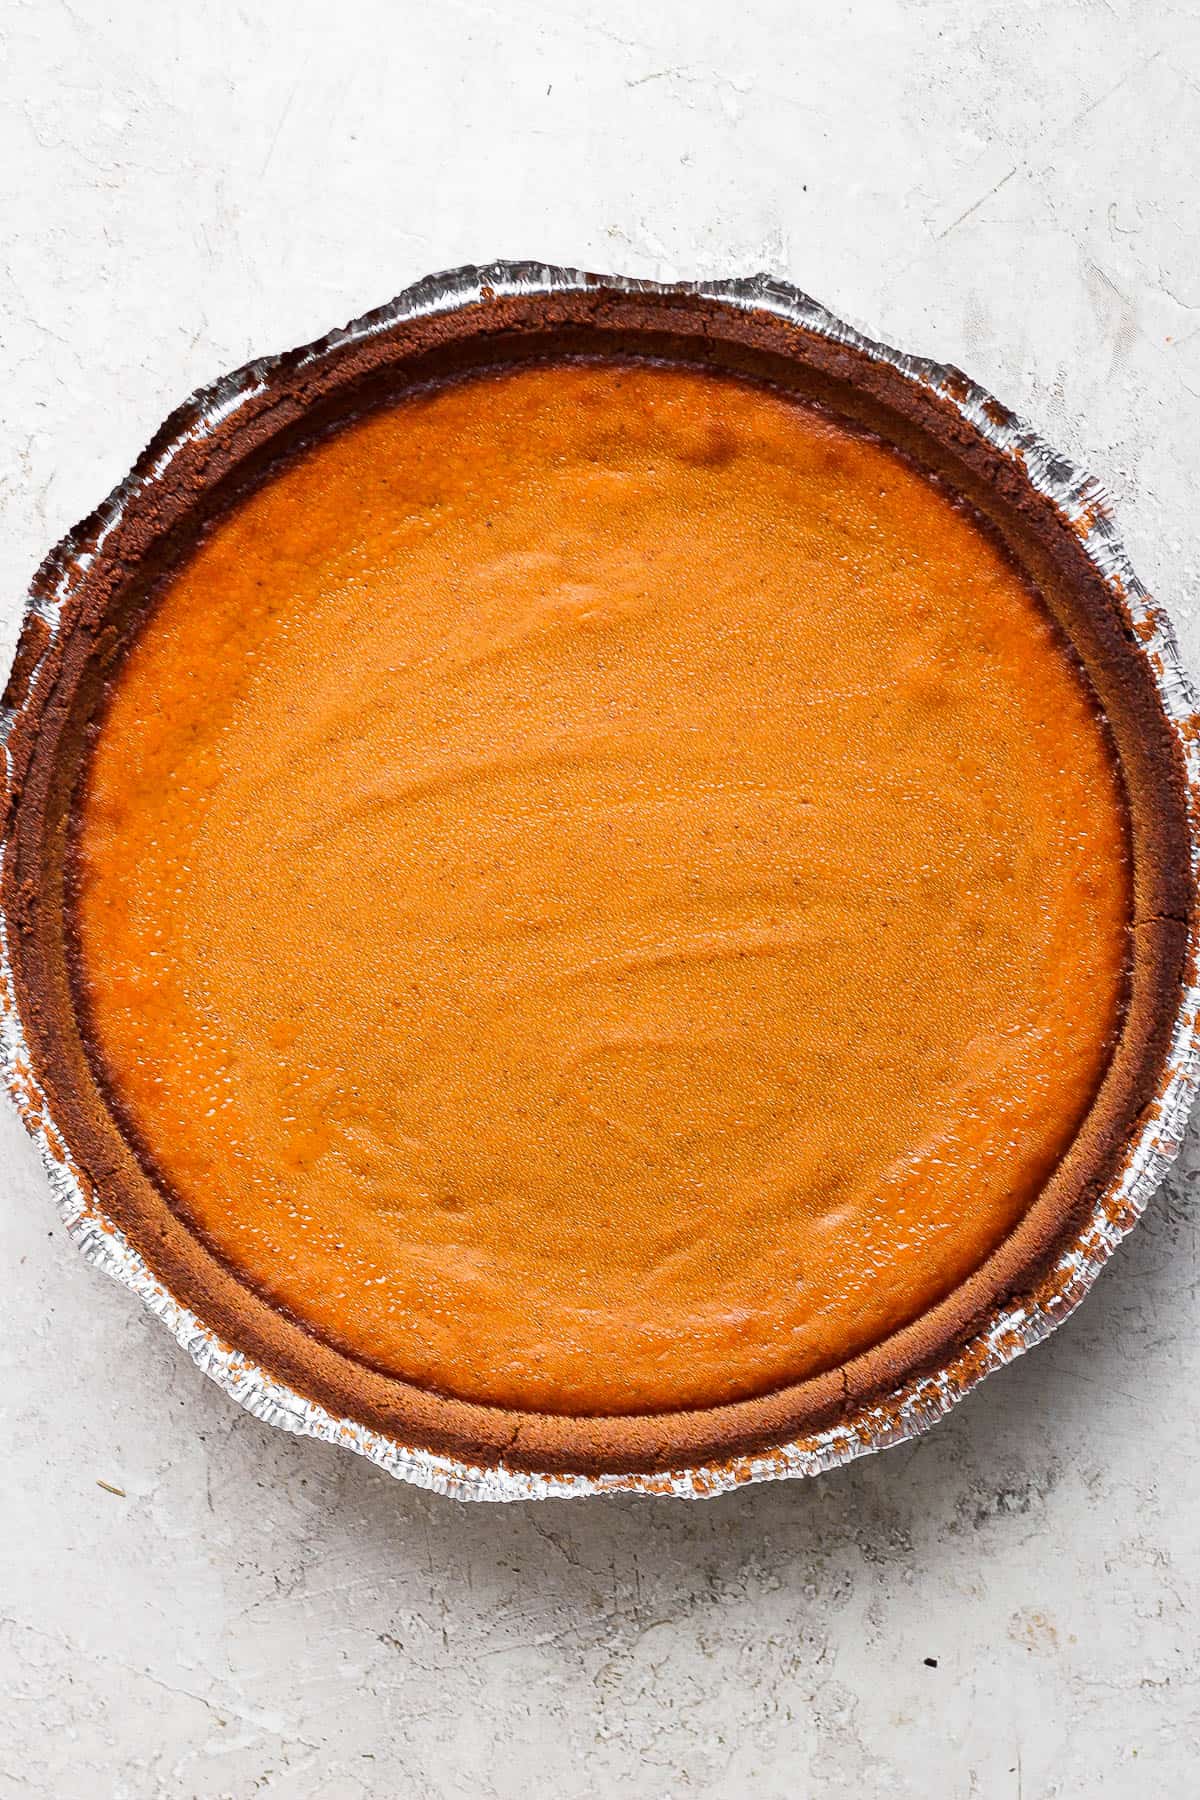 A fully baked pumpkin pie.